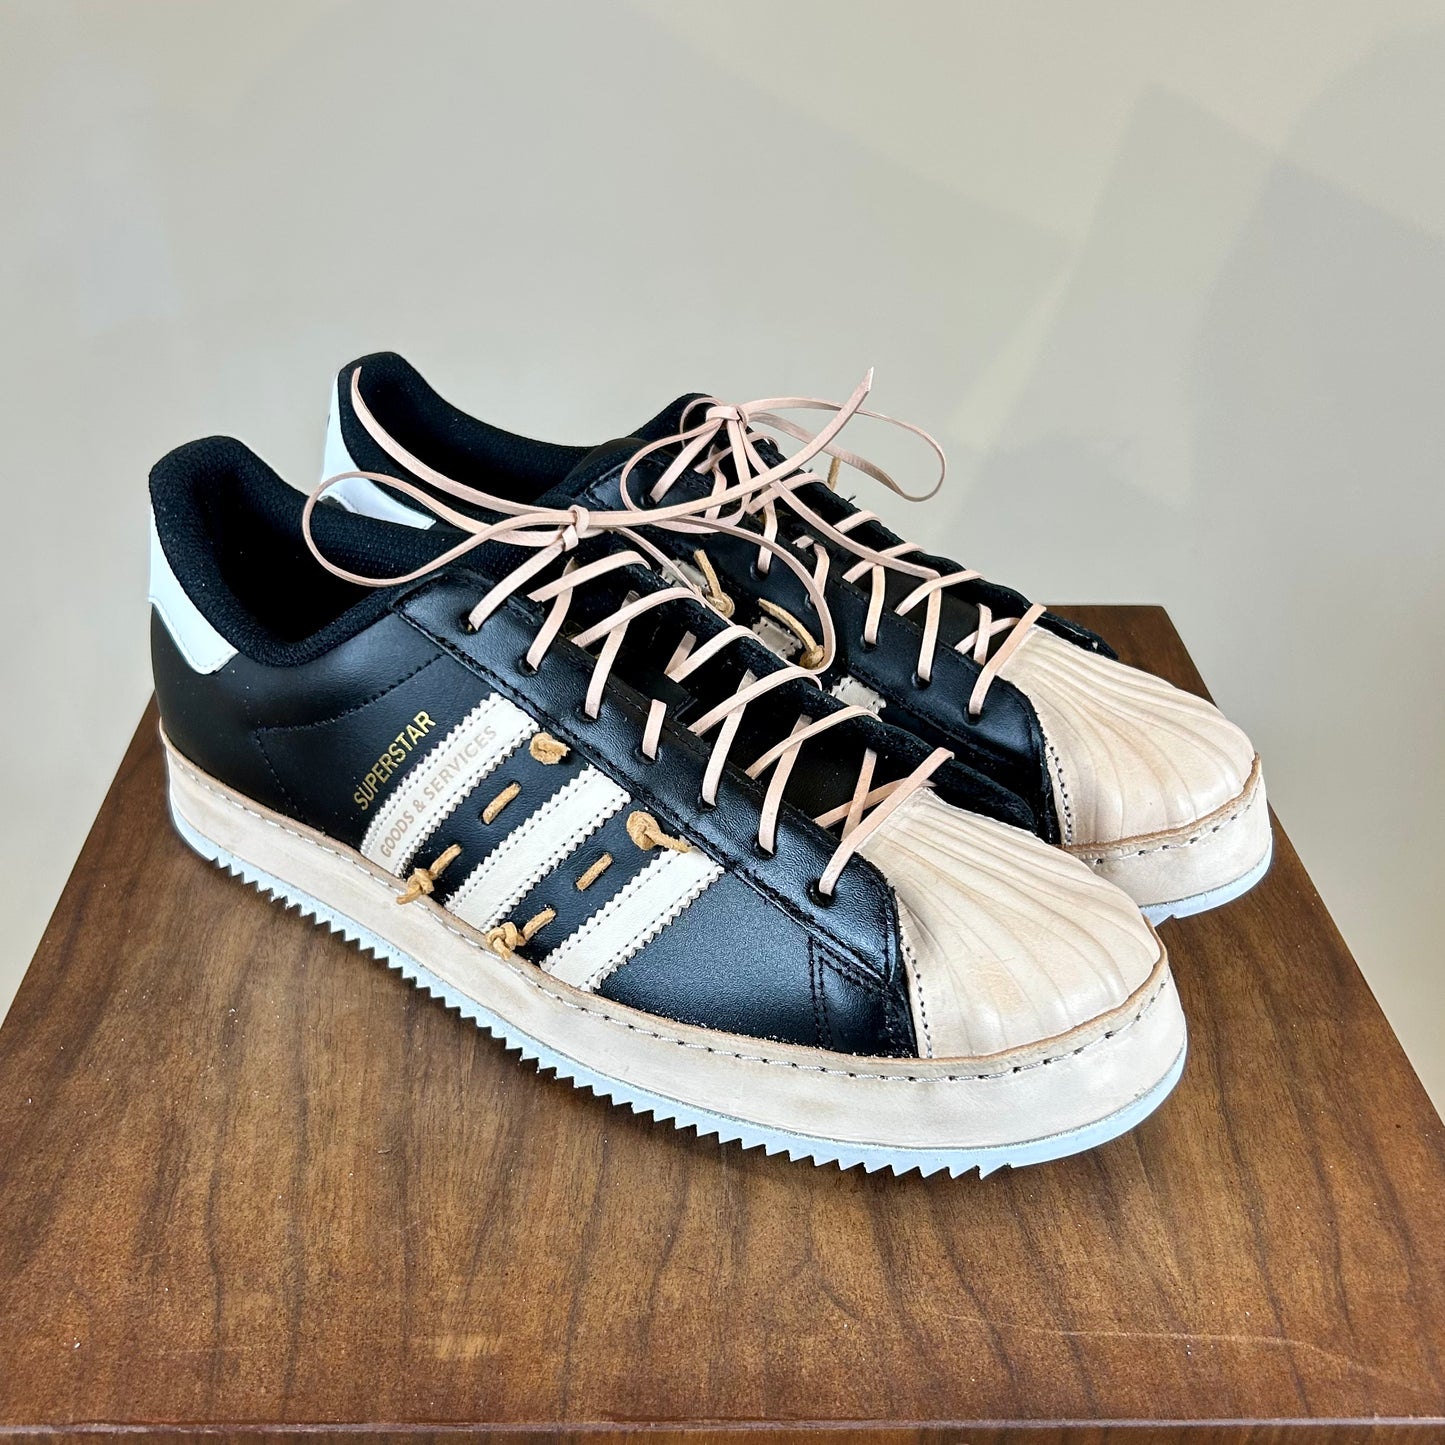 Mima Reggio Emilia - Adidas superstar custom shoes😍❤️ Made by